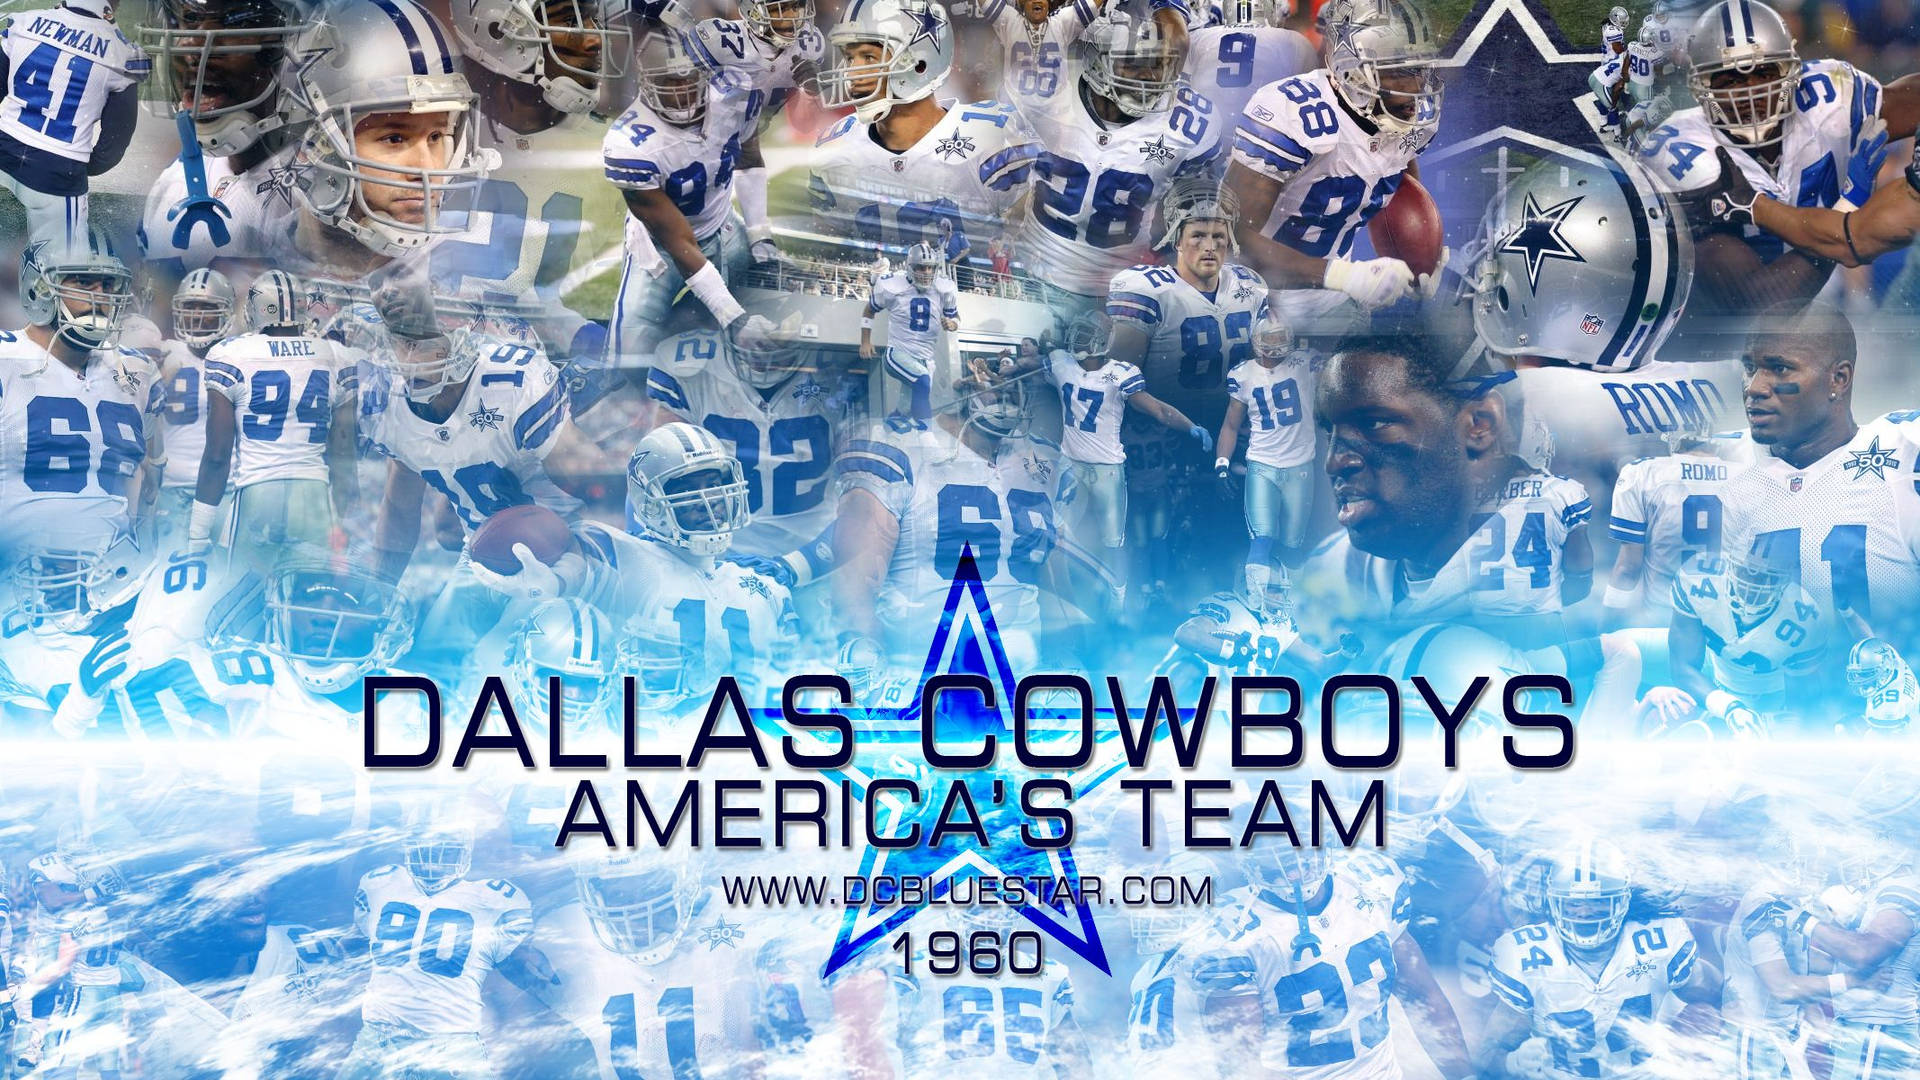 Dallas Cowboys America's Team Collage Wallpaper